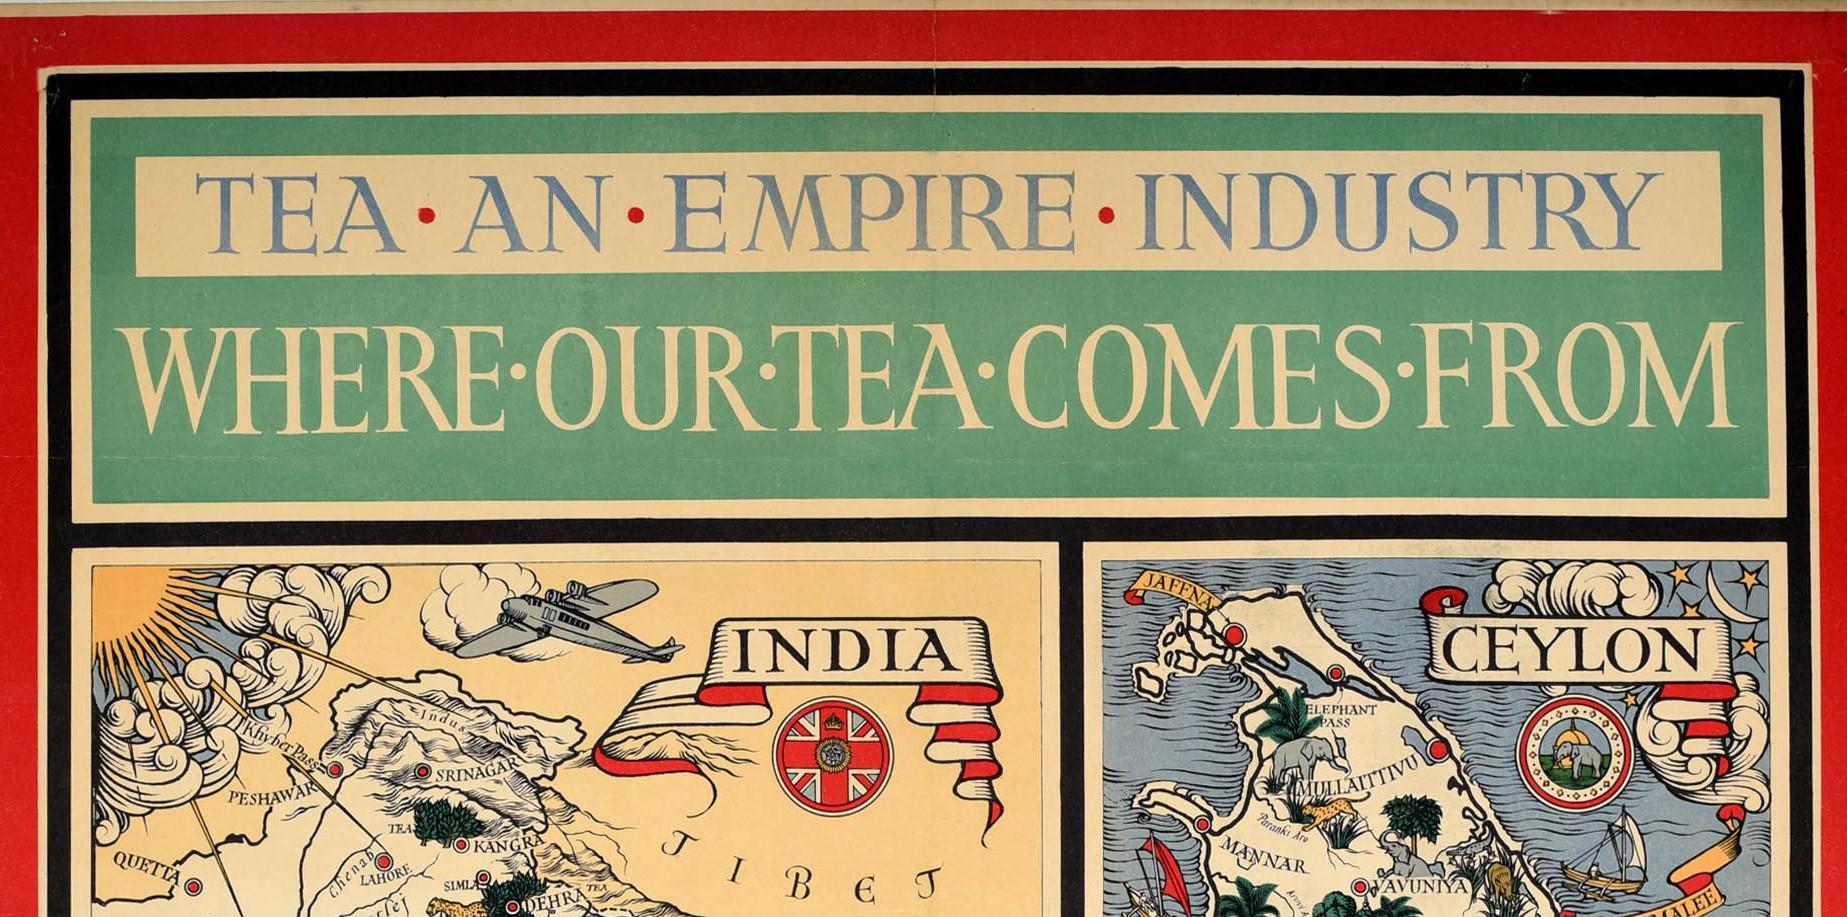 Affiche publicitaire vintage originale - Tea An Empire Industry Where Our Tea Comes From. Rare petite version présentant des cartes illustrées et colorées de l'Inde et de Ceylan (aujourd'hui Sri Lanka) avec les noms des villes dans des bannières